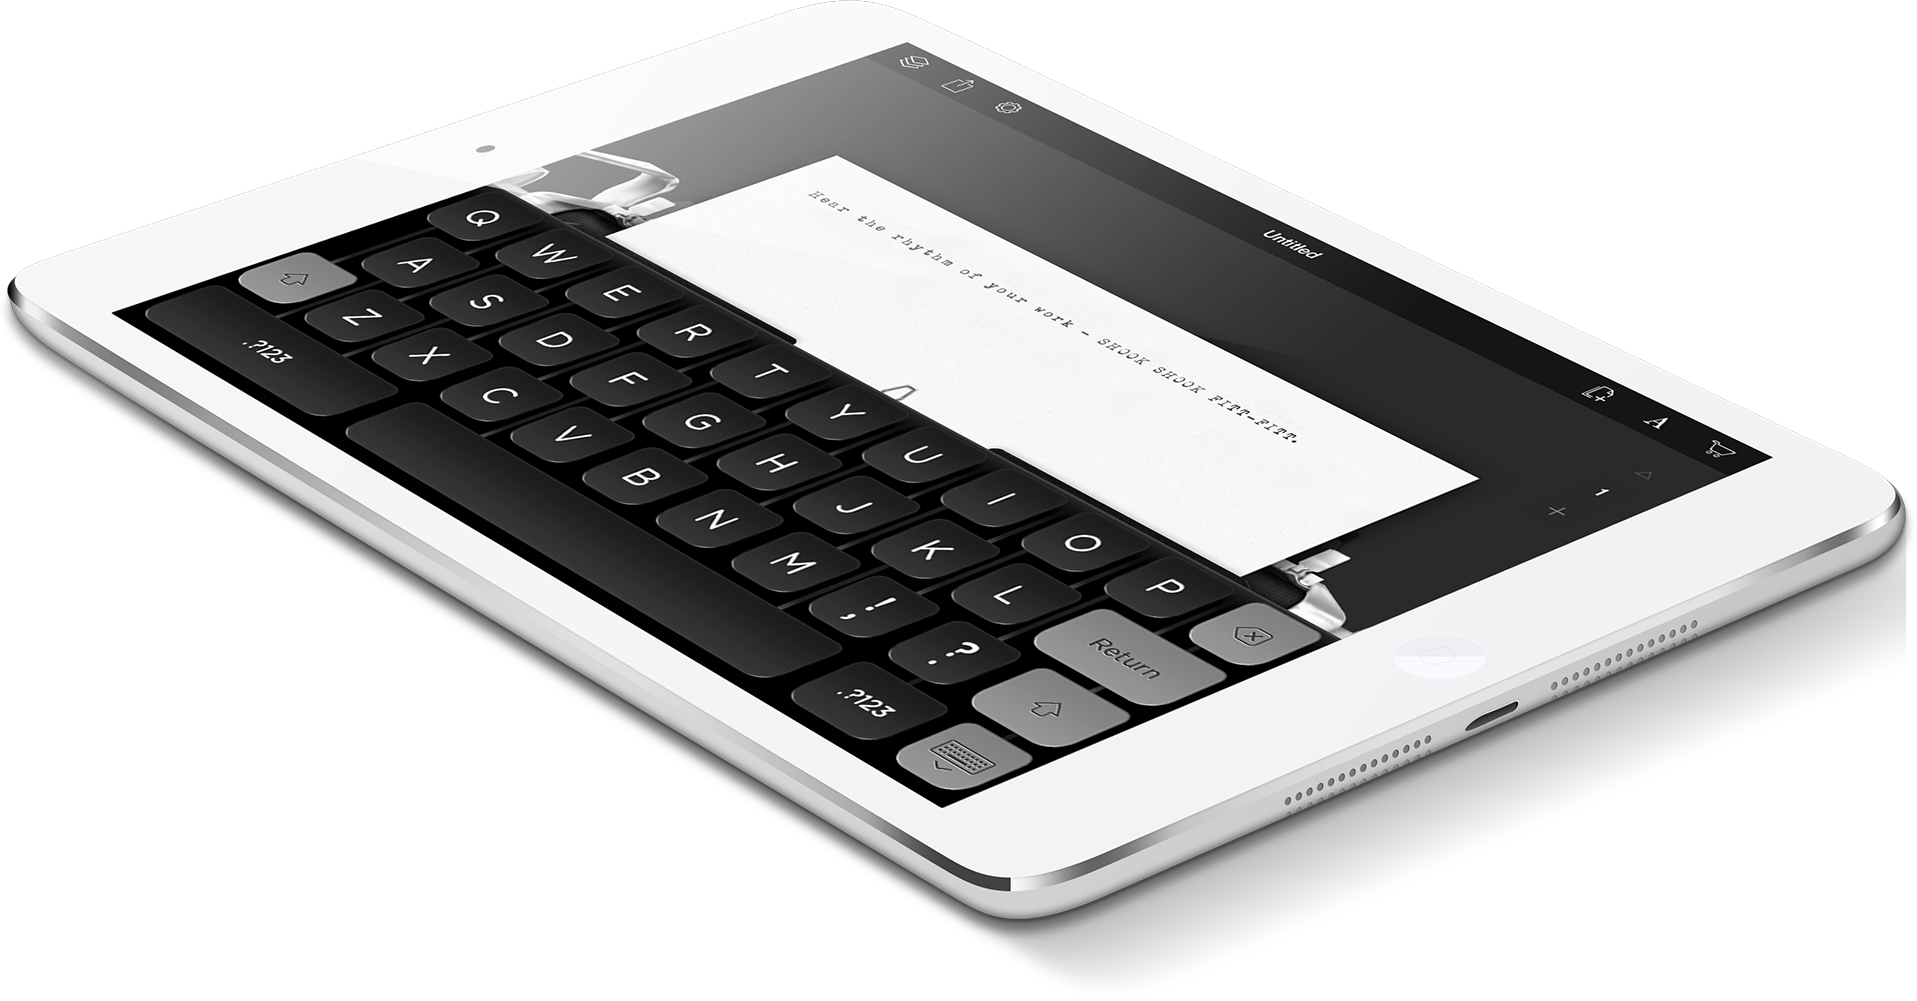 Hanx Writer ricrea il feeling di una macchina da scrivere tradizionale sull'iPad